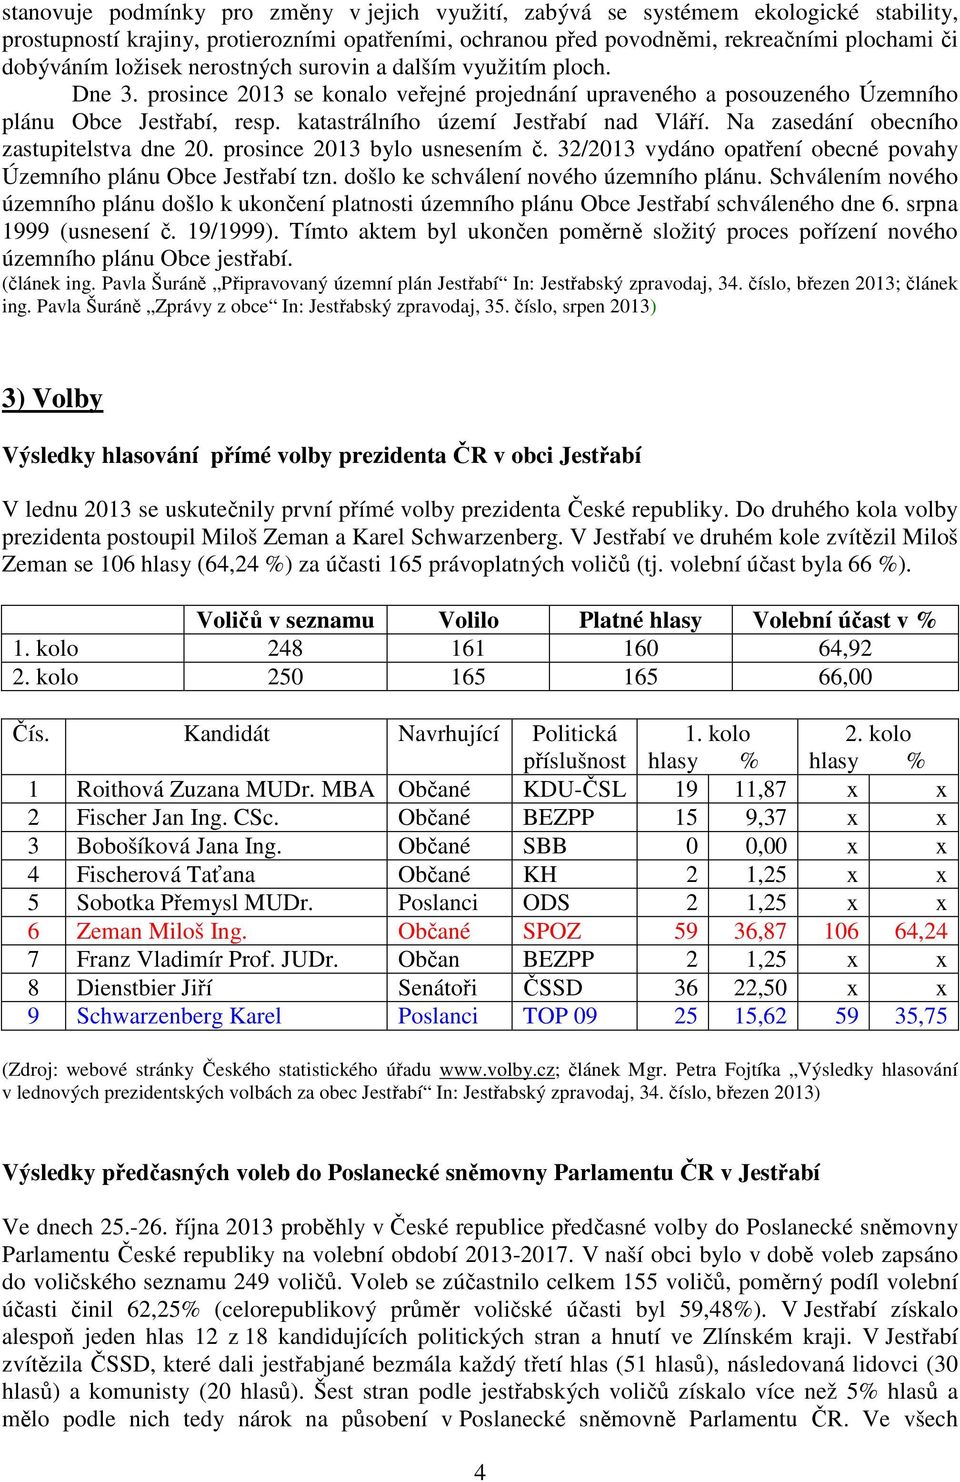 katastrálního území Jestřabí nad Vláří. Na zasedání obecního zastupitelstva dne 20. prosince 2013 bylo usnesením č. 32/2013 vydáno opatření obecné povahy Územního plánu Obce Jestřabí tzn.